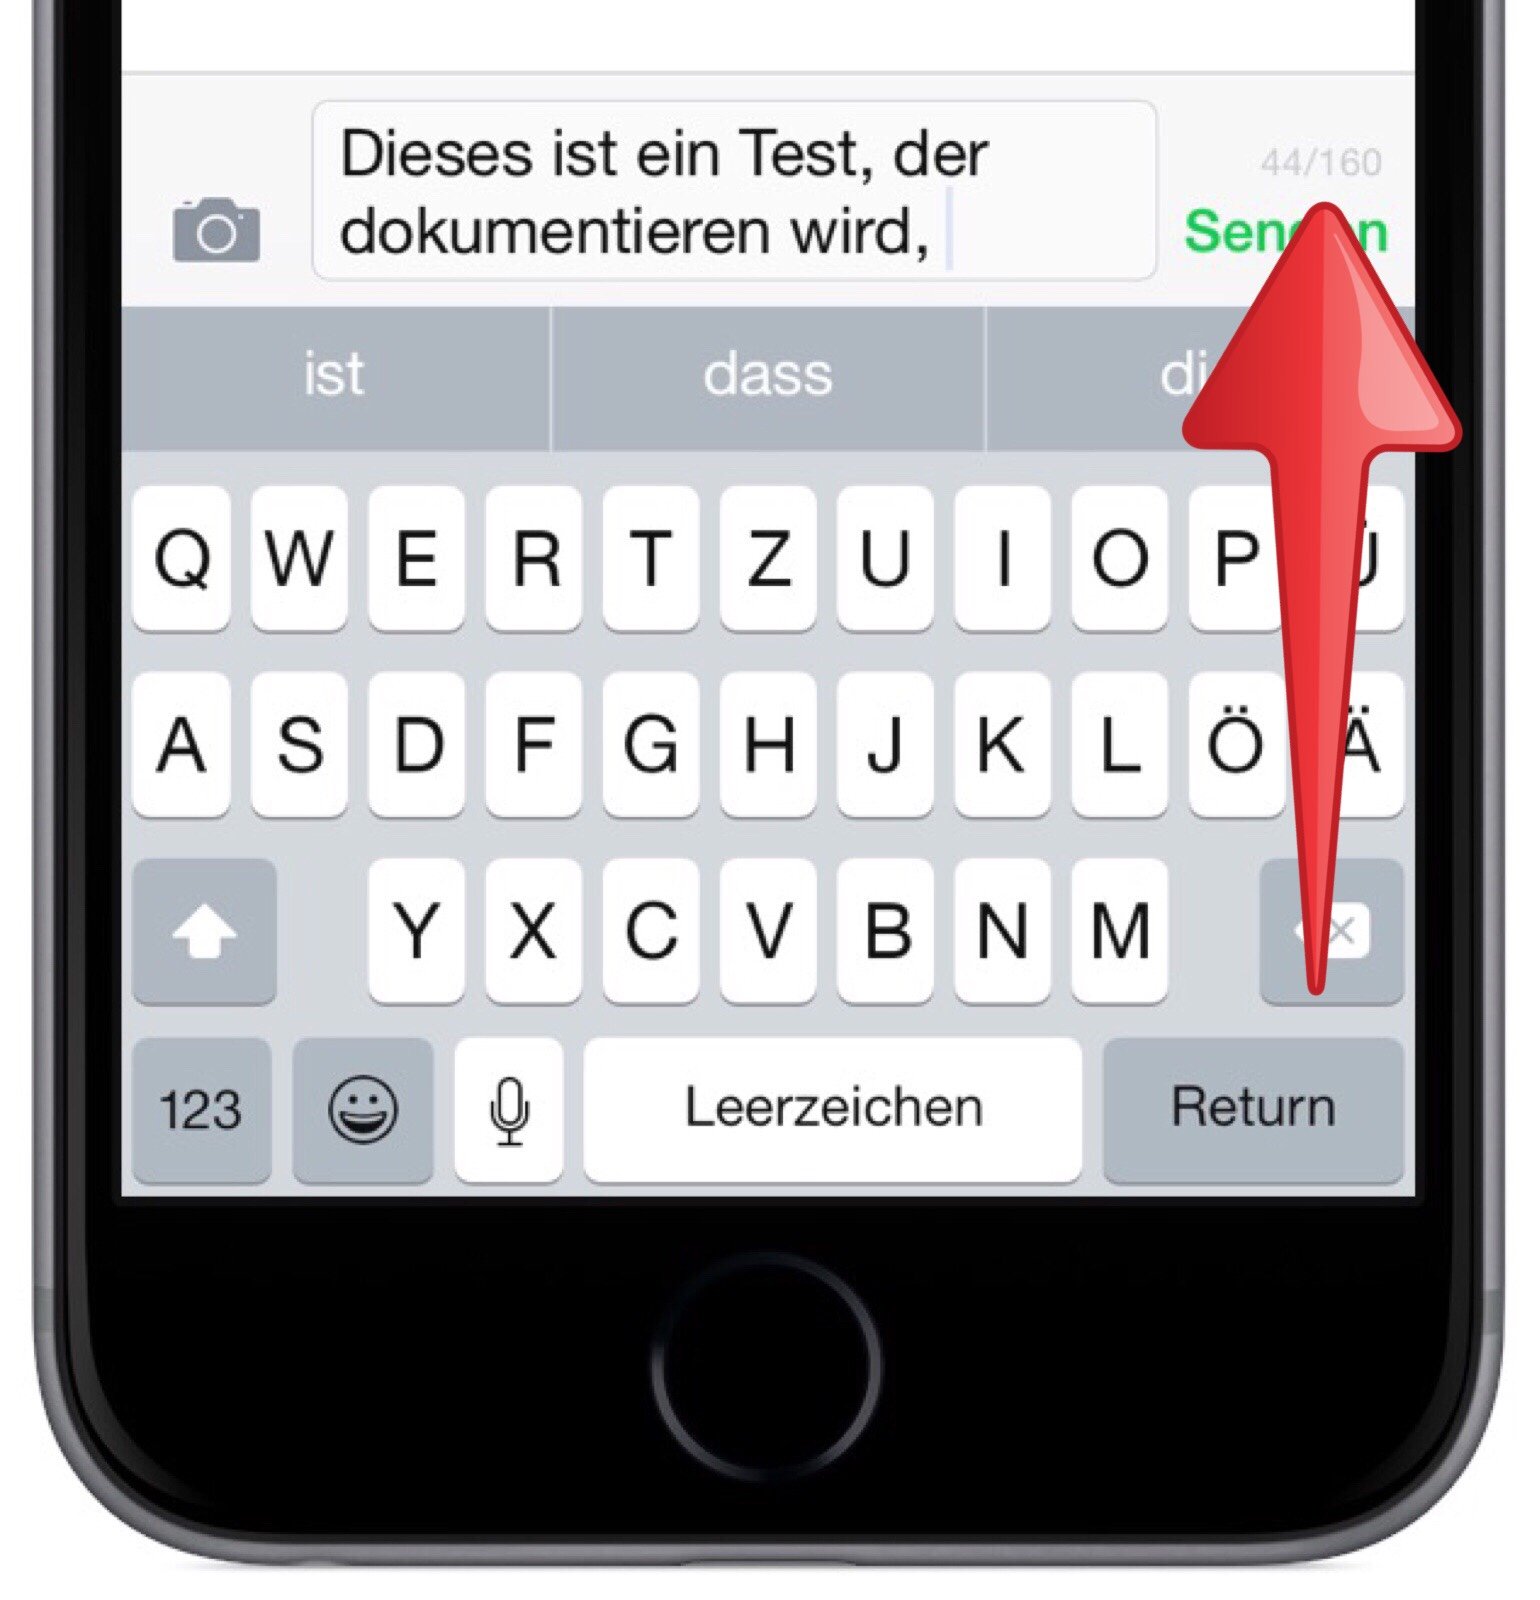 iPhone-Nachrichten-SMS-Sonderzeichen-spanisch-skandinavisch-Anzahl-Zeichen-Kostenfalle-2.jpg